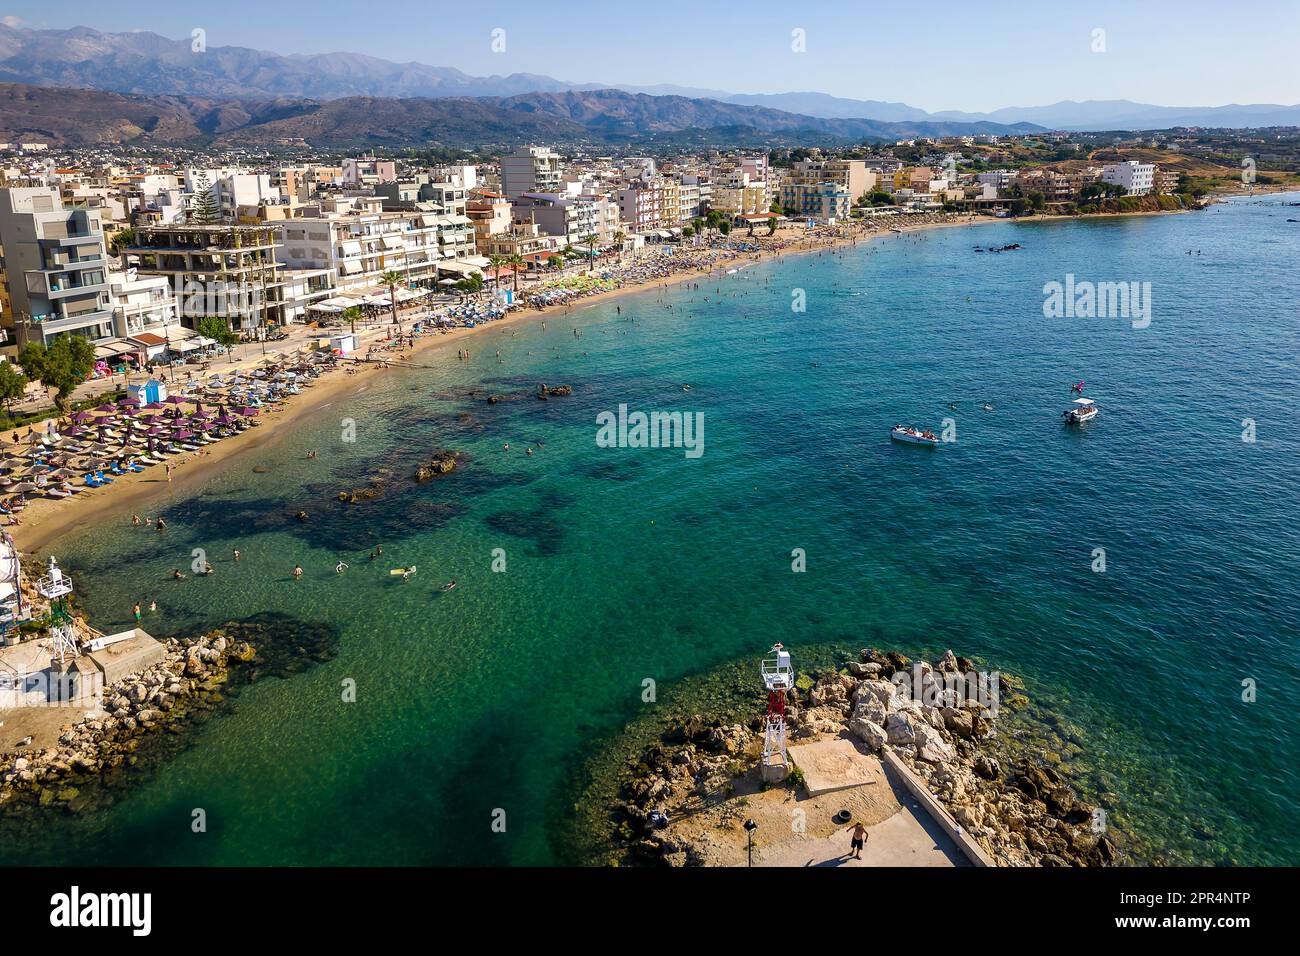 Vista aerea di una spiaggia affollata nella famosa località turistica di Nea Chora a Chania, Creta (Grecia) Foto Stock